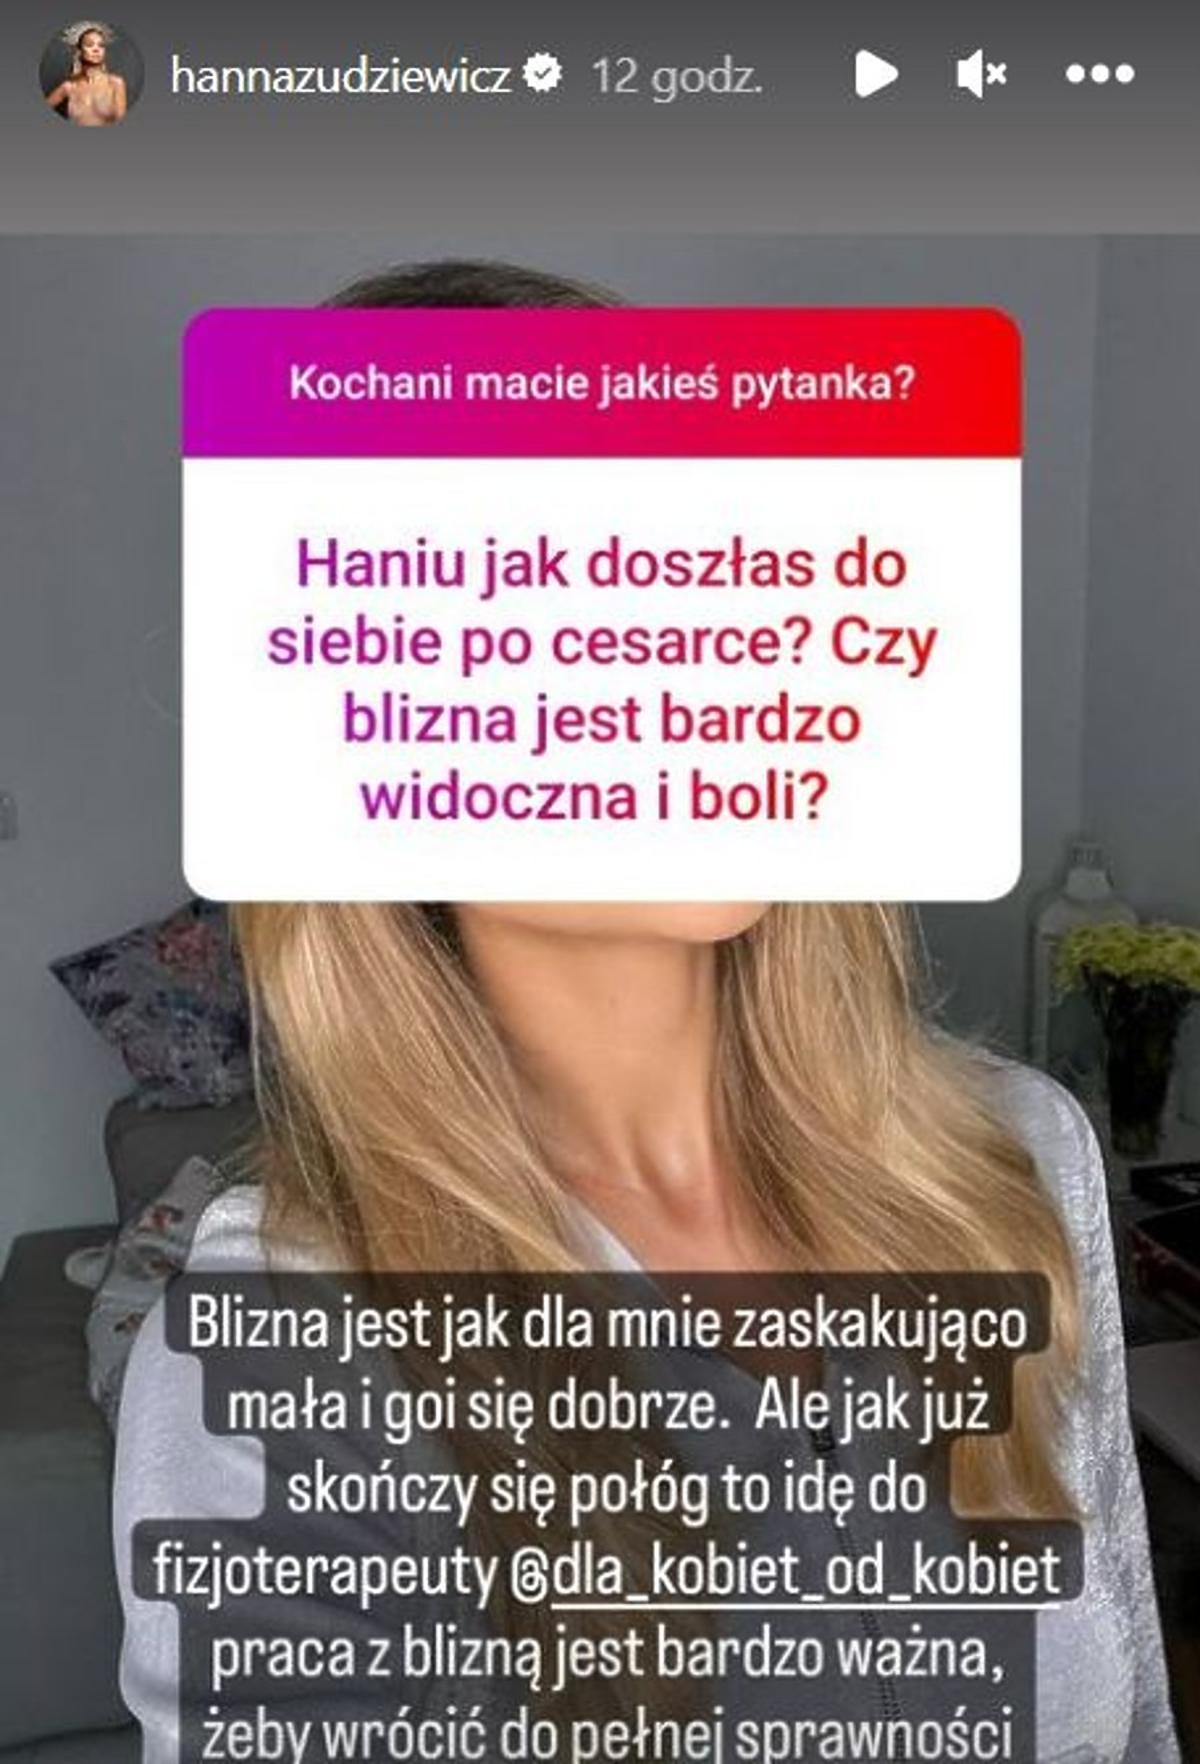 Zrzut ekranu Hanny Żudziewicz, która odpowiada na pytania dotyczące dziecka